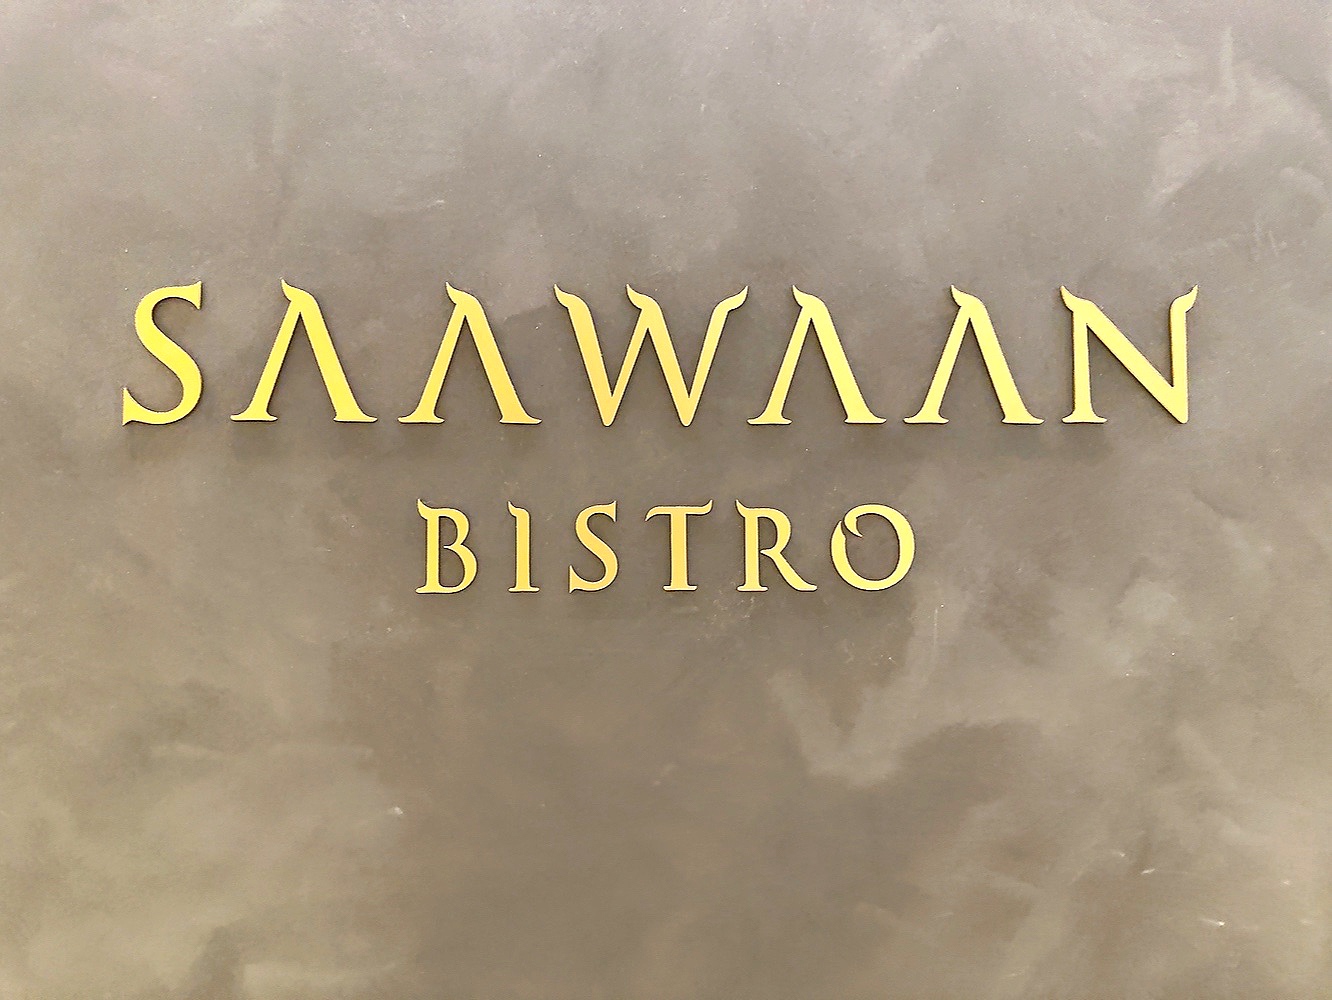 麻布台ヒルズ『SAAWAAN BISTRO』店名のロゴ